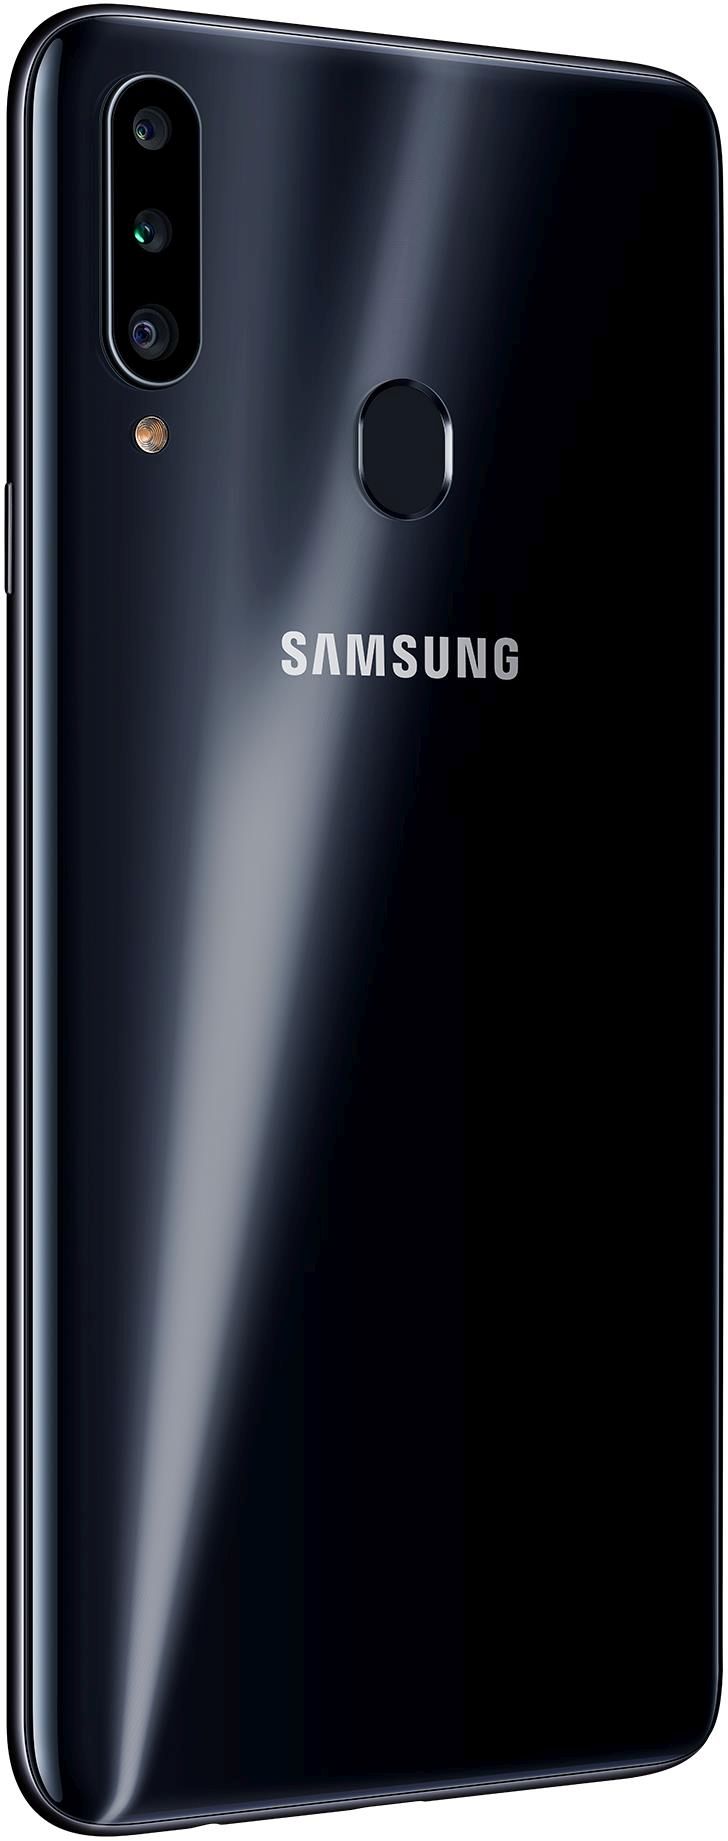 Samsung Galaxy A20s 32GB Black